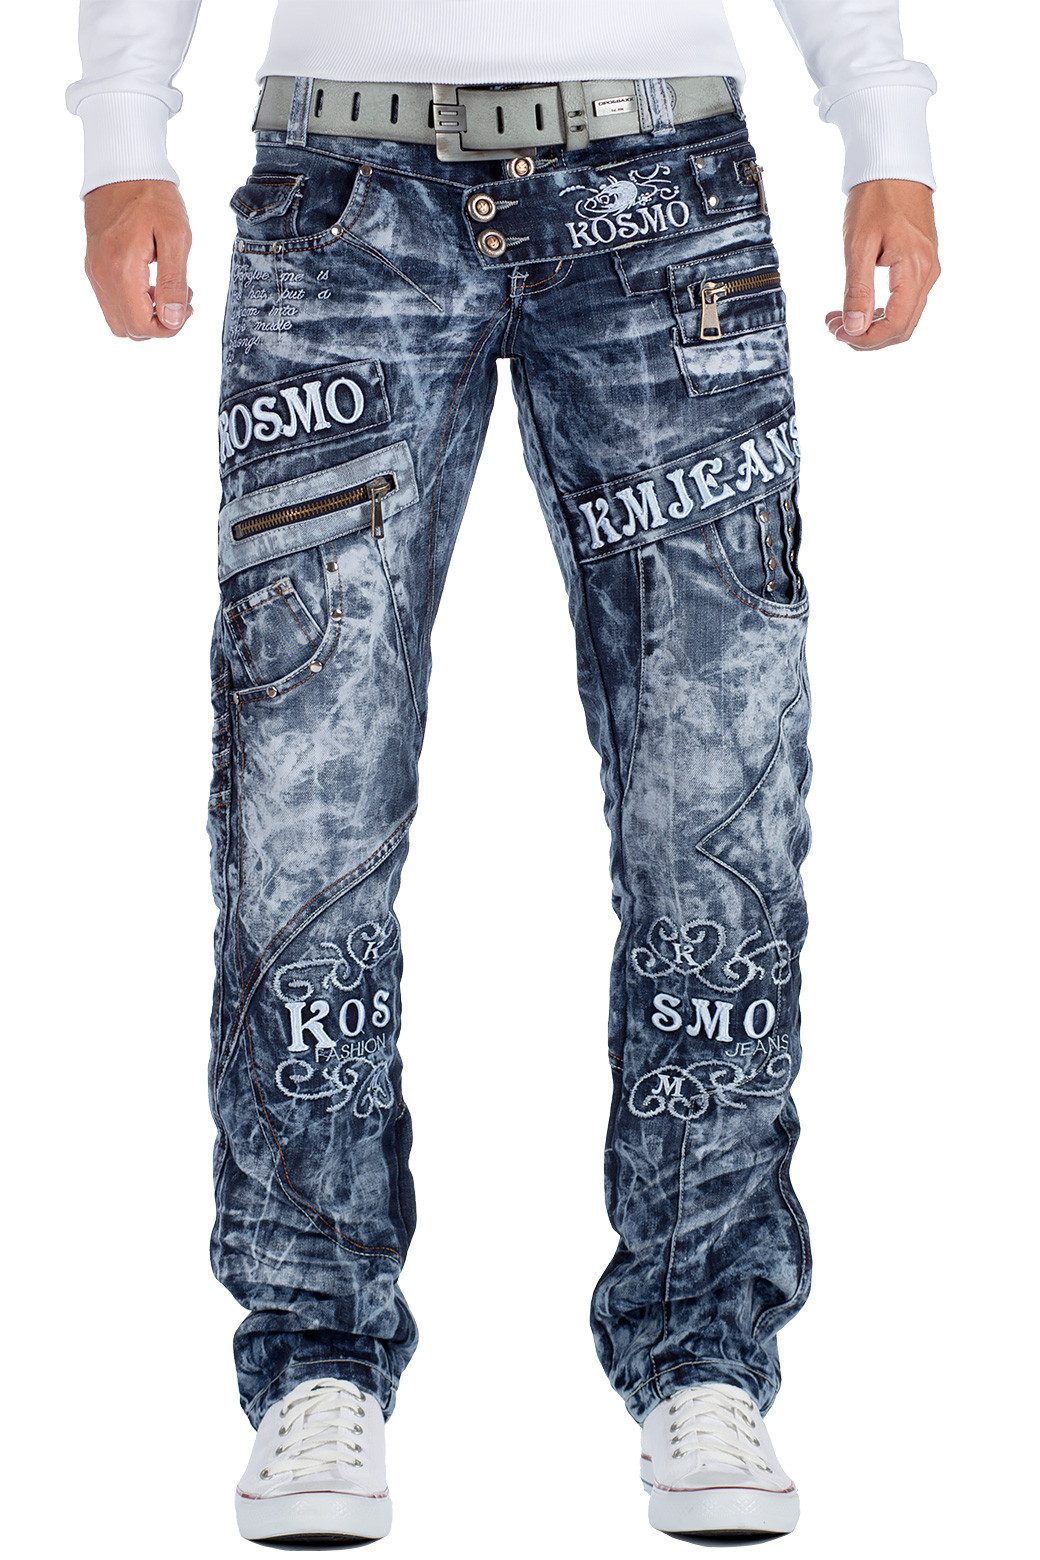 Kosmo Lupo 5-Pocket-Jeans Auffällige Herren Hose BA-KM051 Blau W32/L32 (1-tlg) Markante Waschnung und Verzierungen